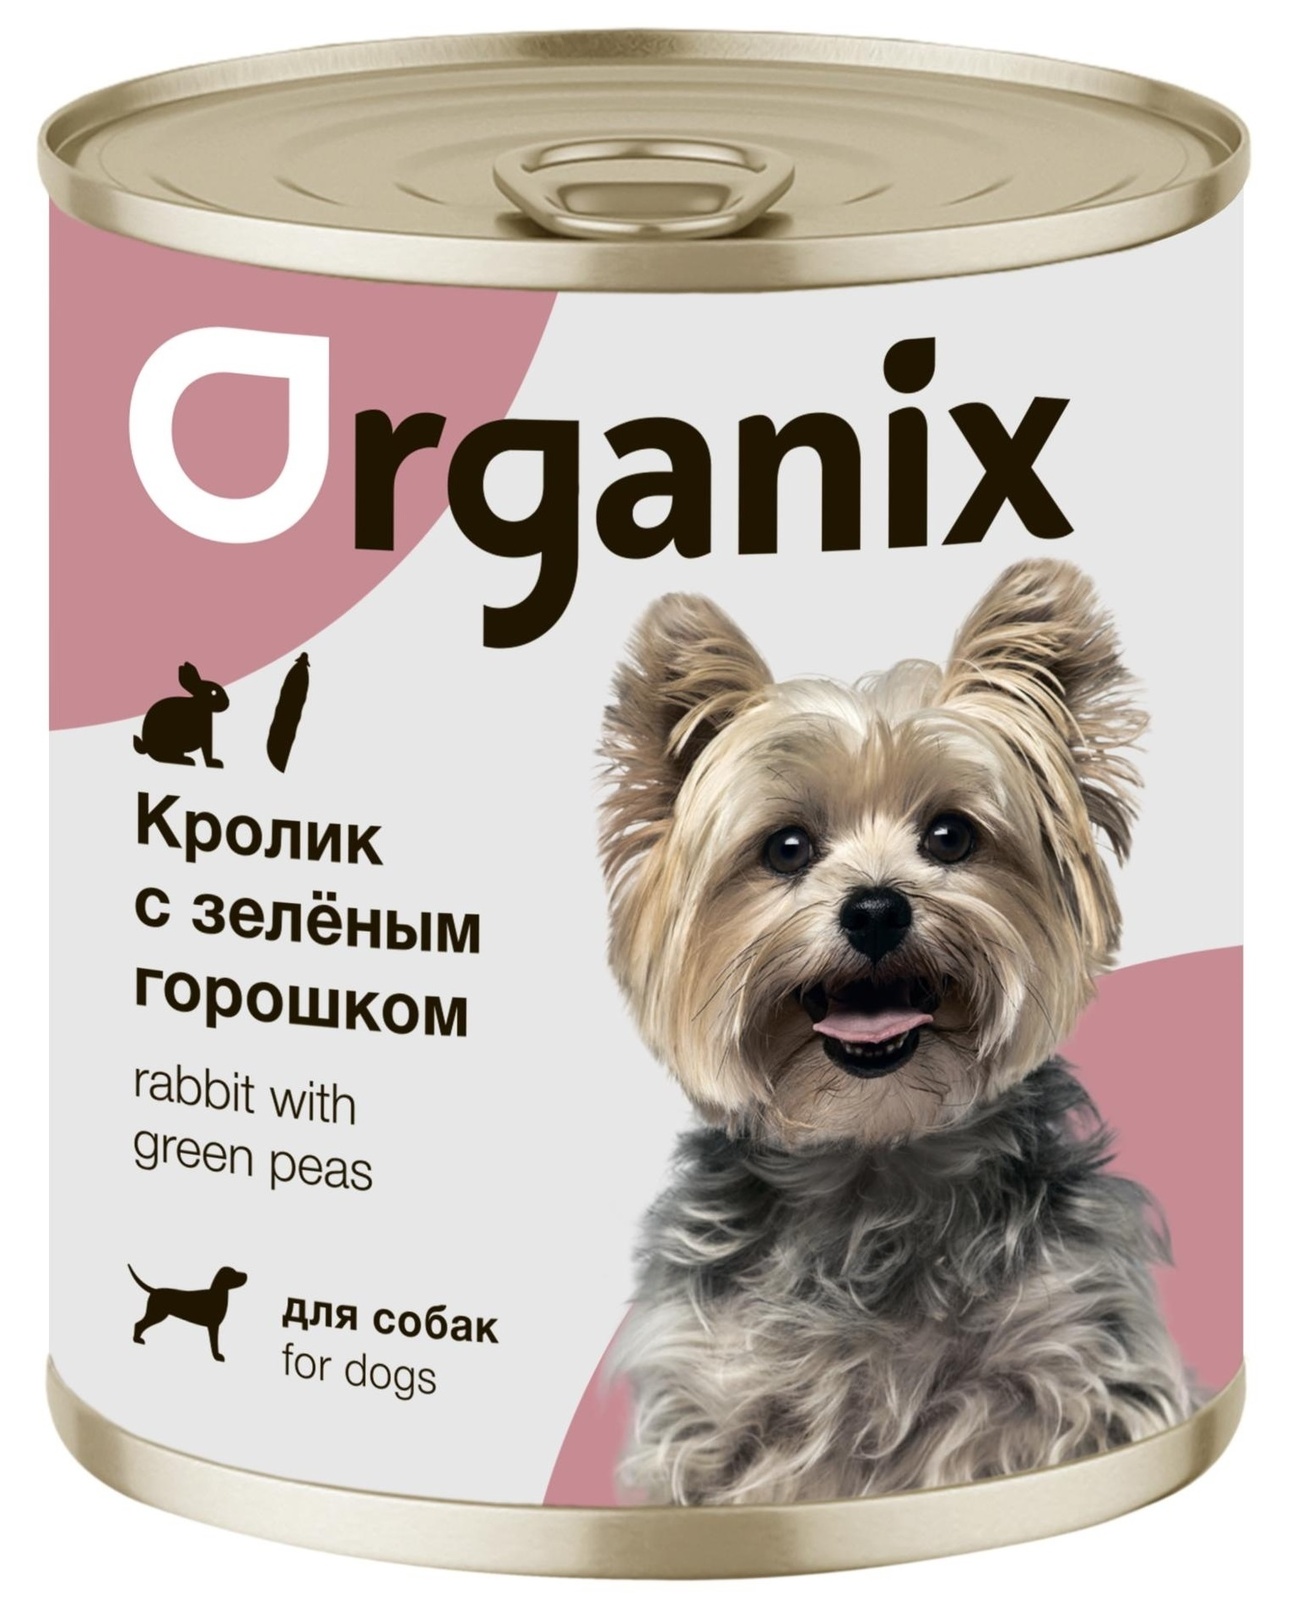 Organix консервы Organix консервы для собак Кролик с зеленым горошком (400 г) organix консервы organix консервы для собак индейка с овощным ассорти 400 г